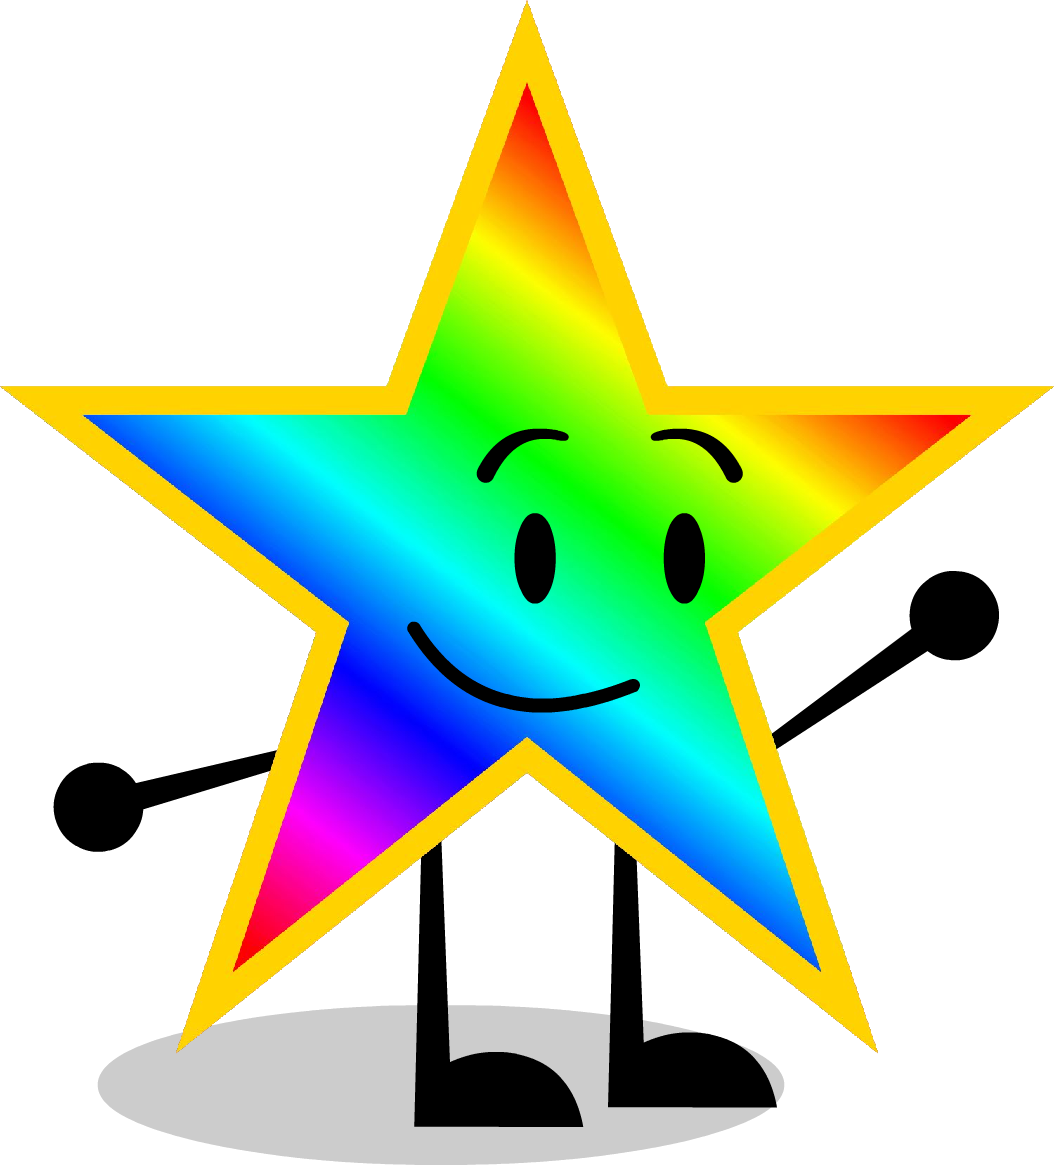 Rainbow Star - Object Show Rainbow Star (1054x1165)